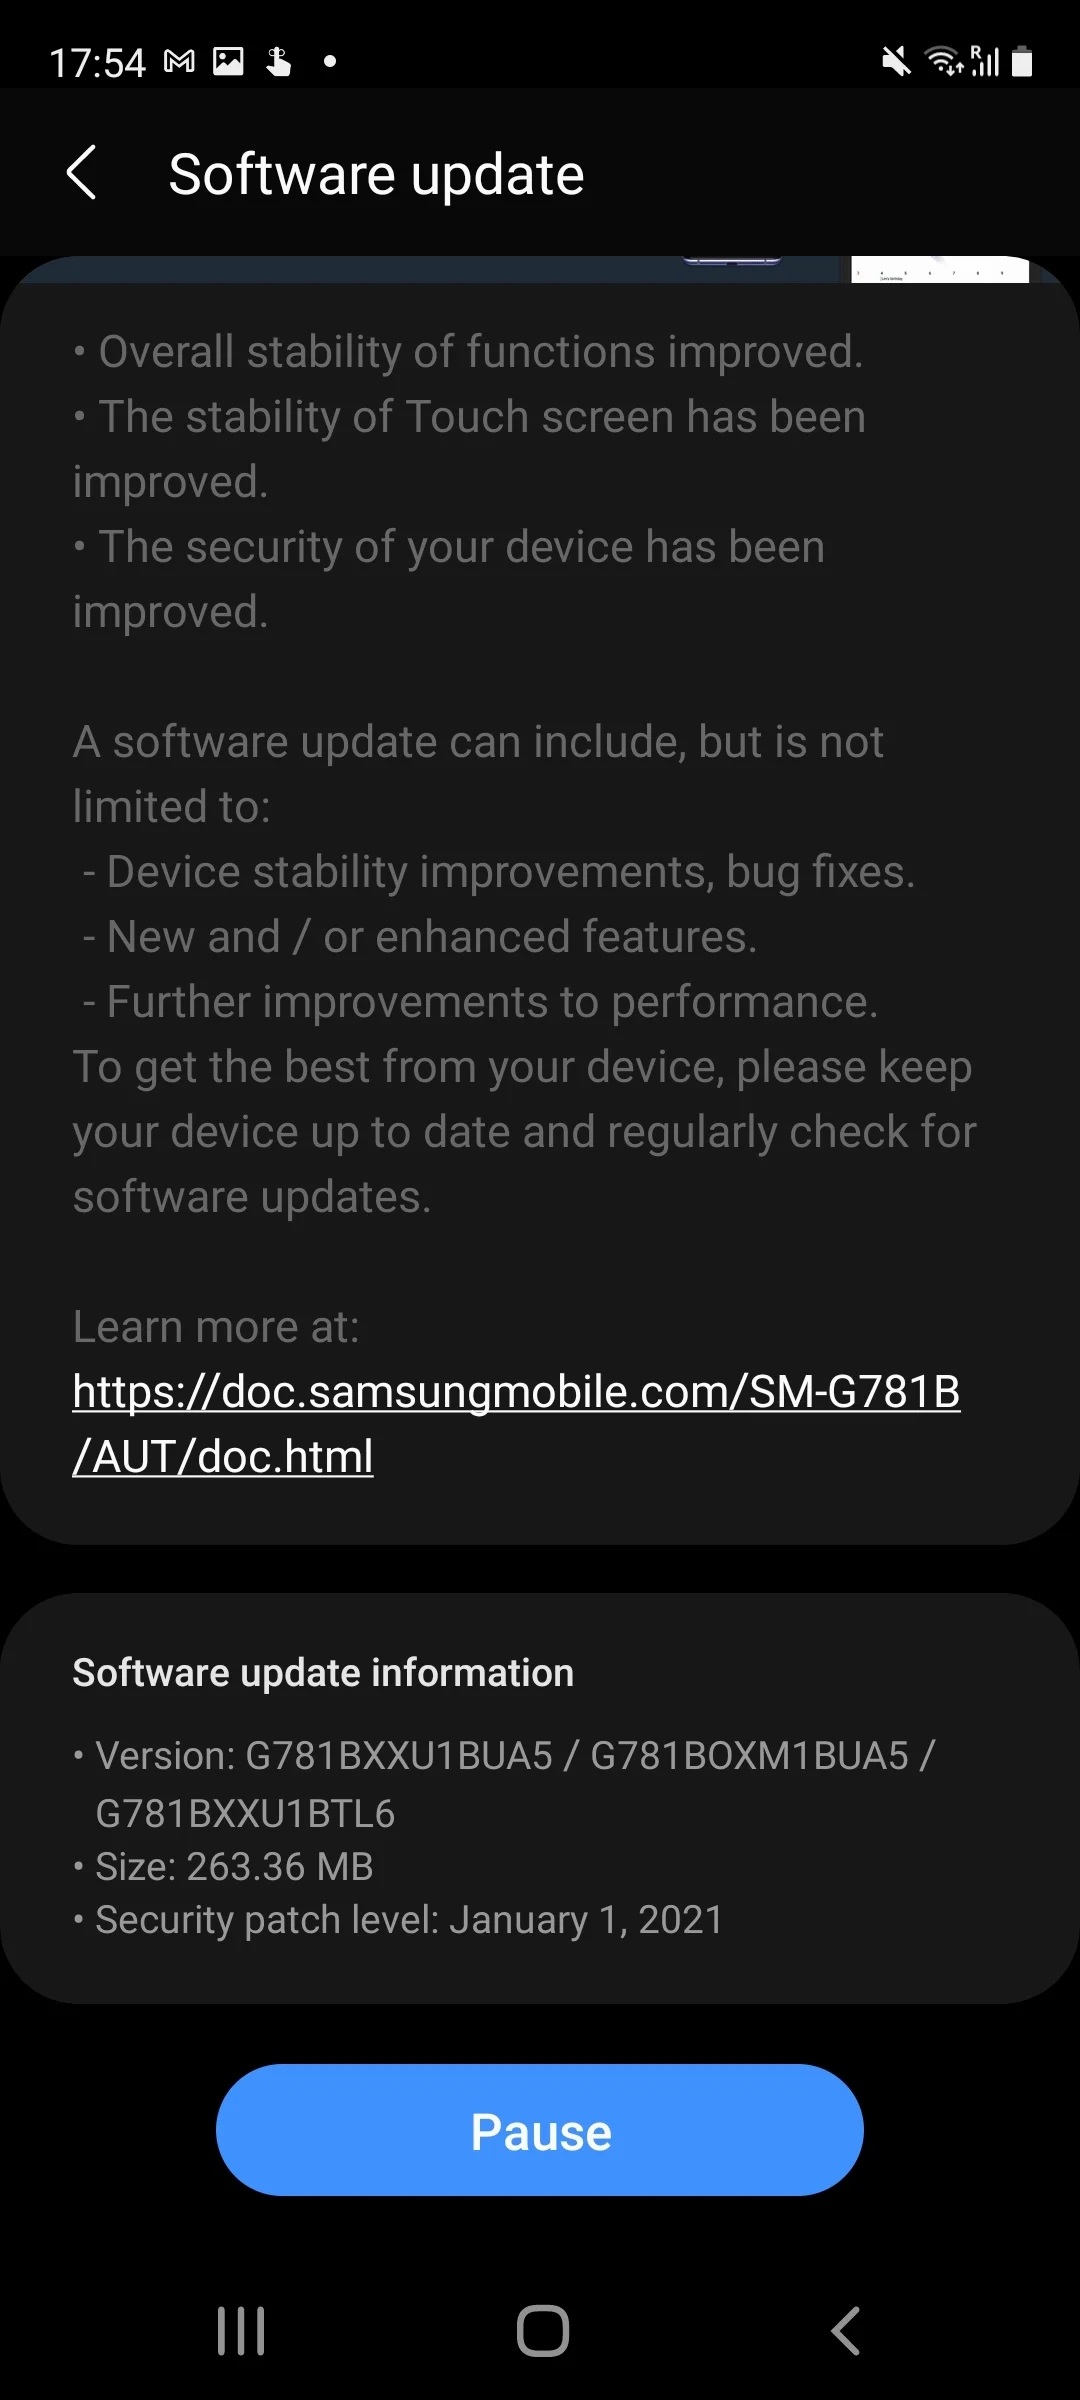 Samsung Galaxy S20 FE update